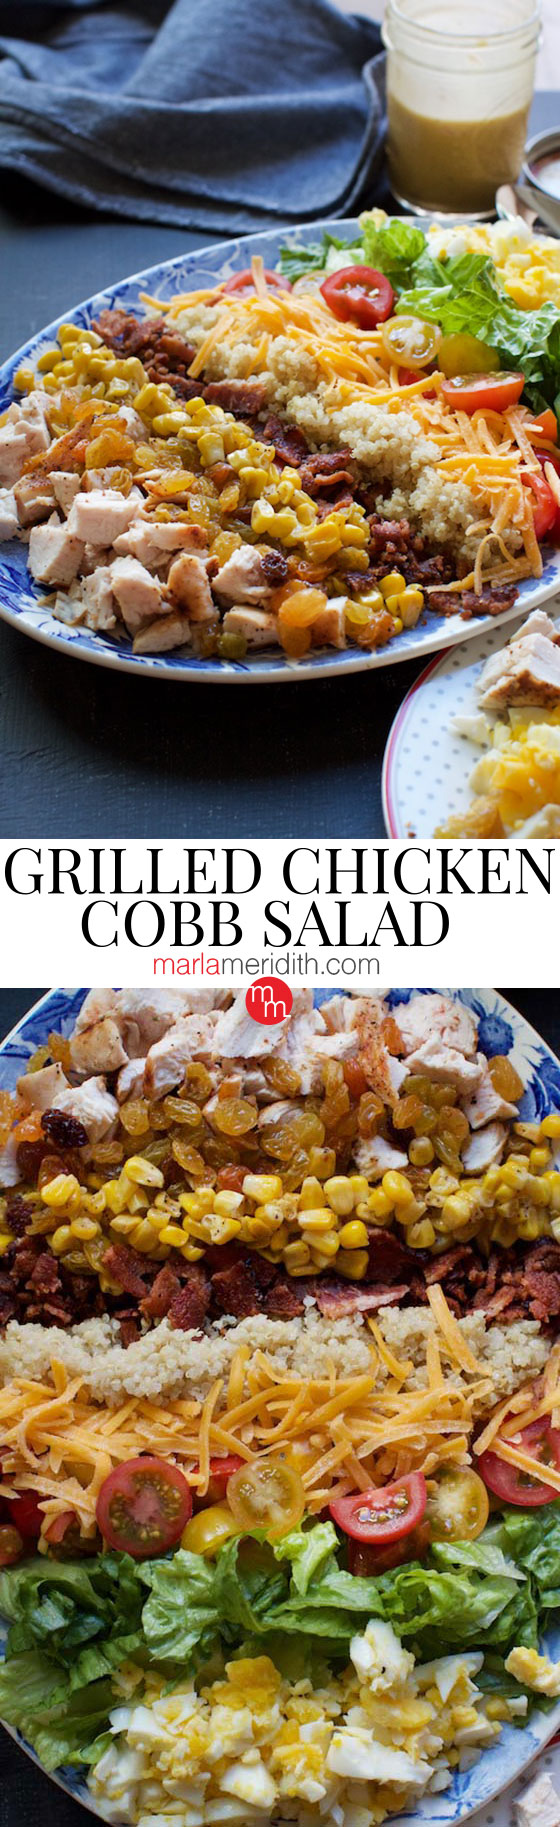 Grilled Chicken Cobb Salad recipe